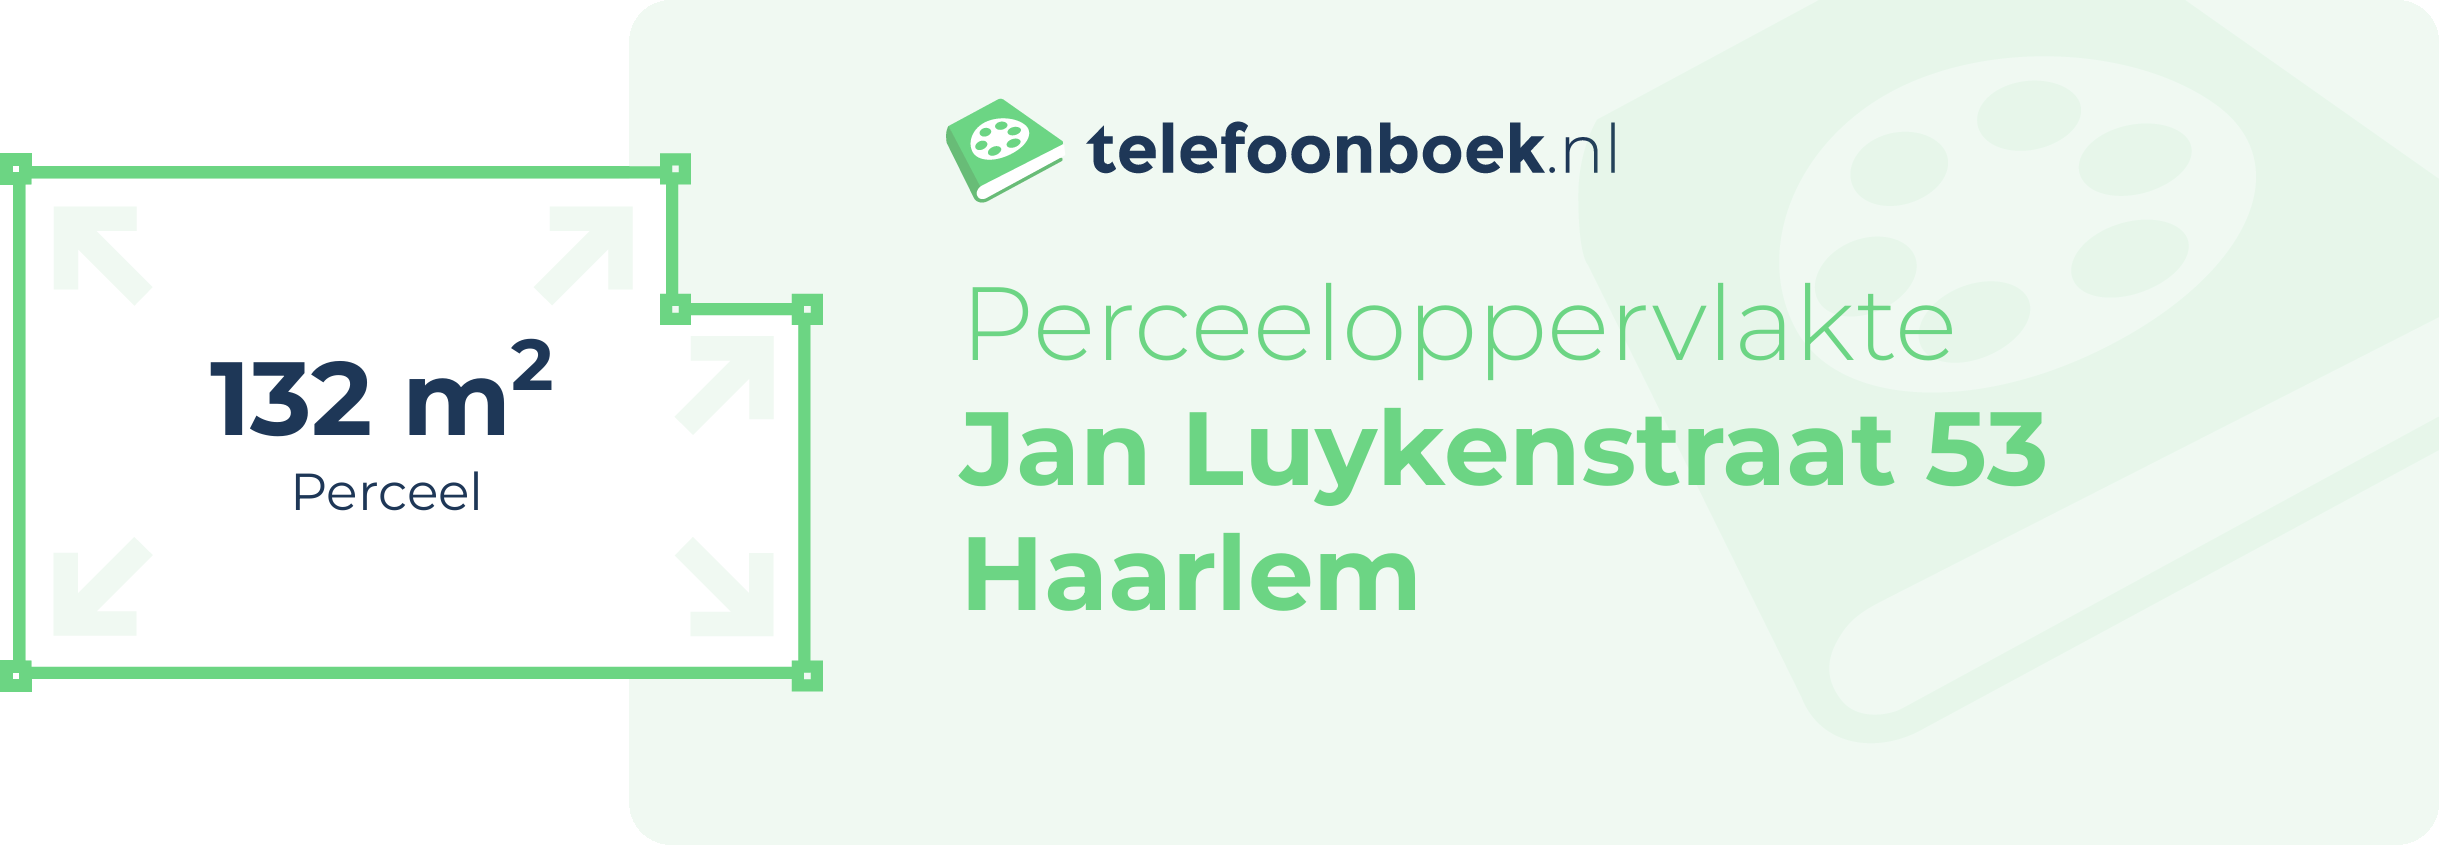 Perceeloppervlakte Jan Luykenstraat 53 Haarlem